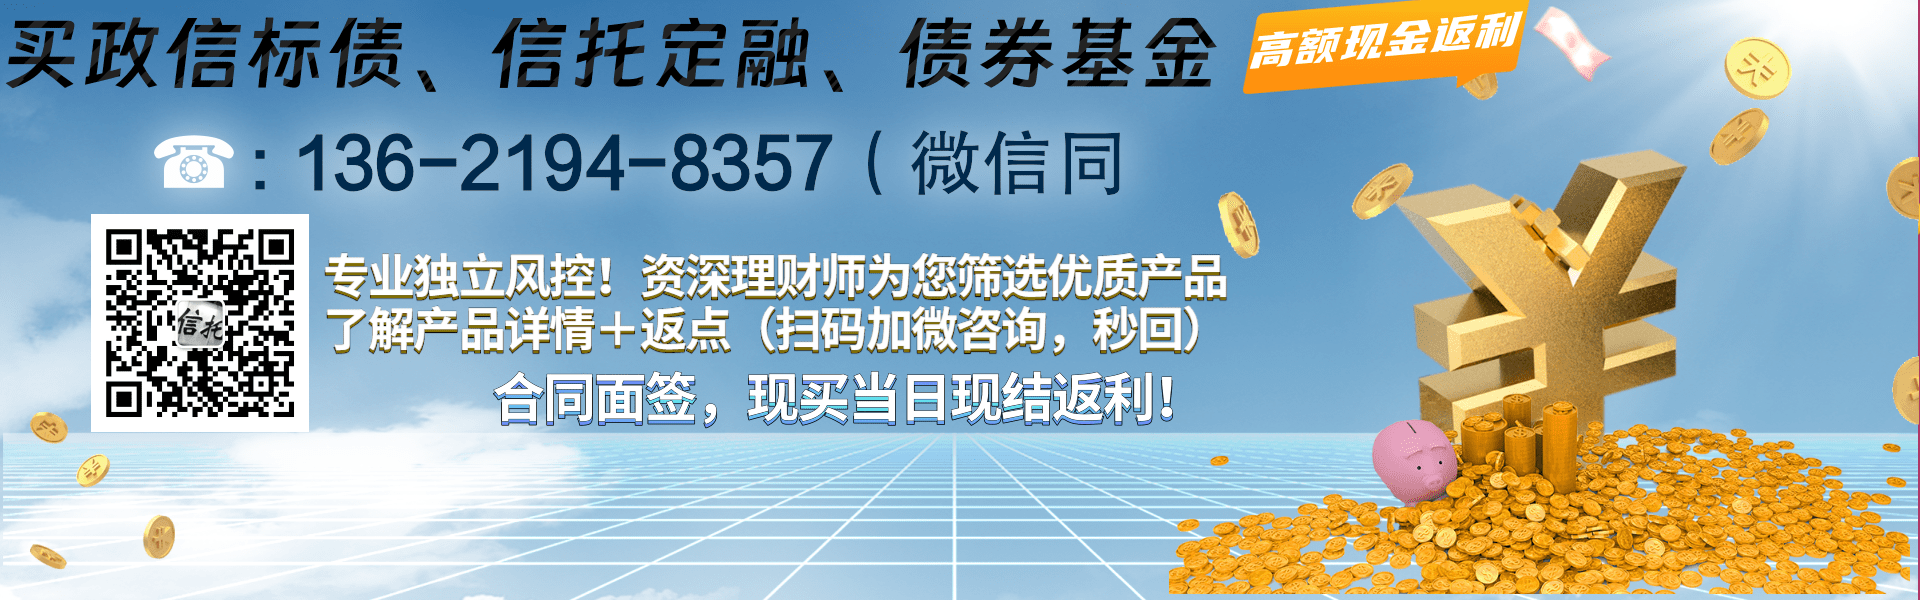 央企信托-351号青岛永续债集合资金信托计划